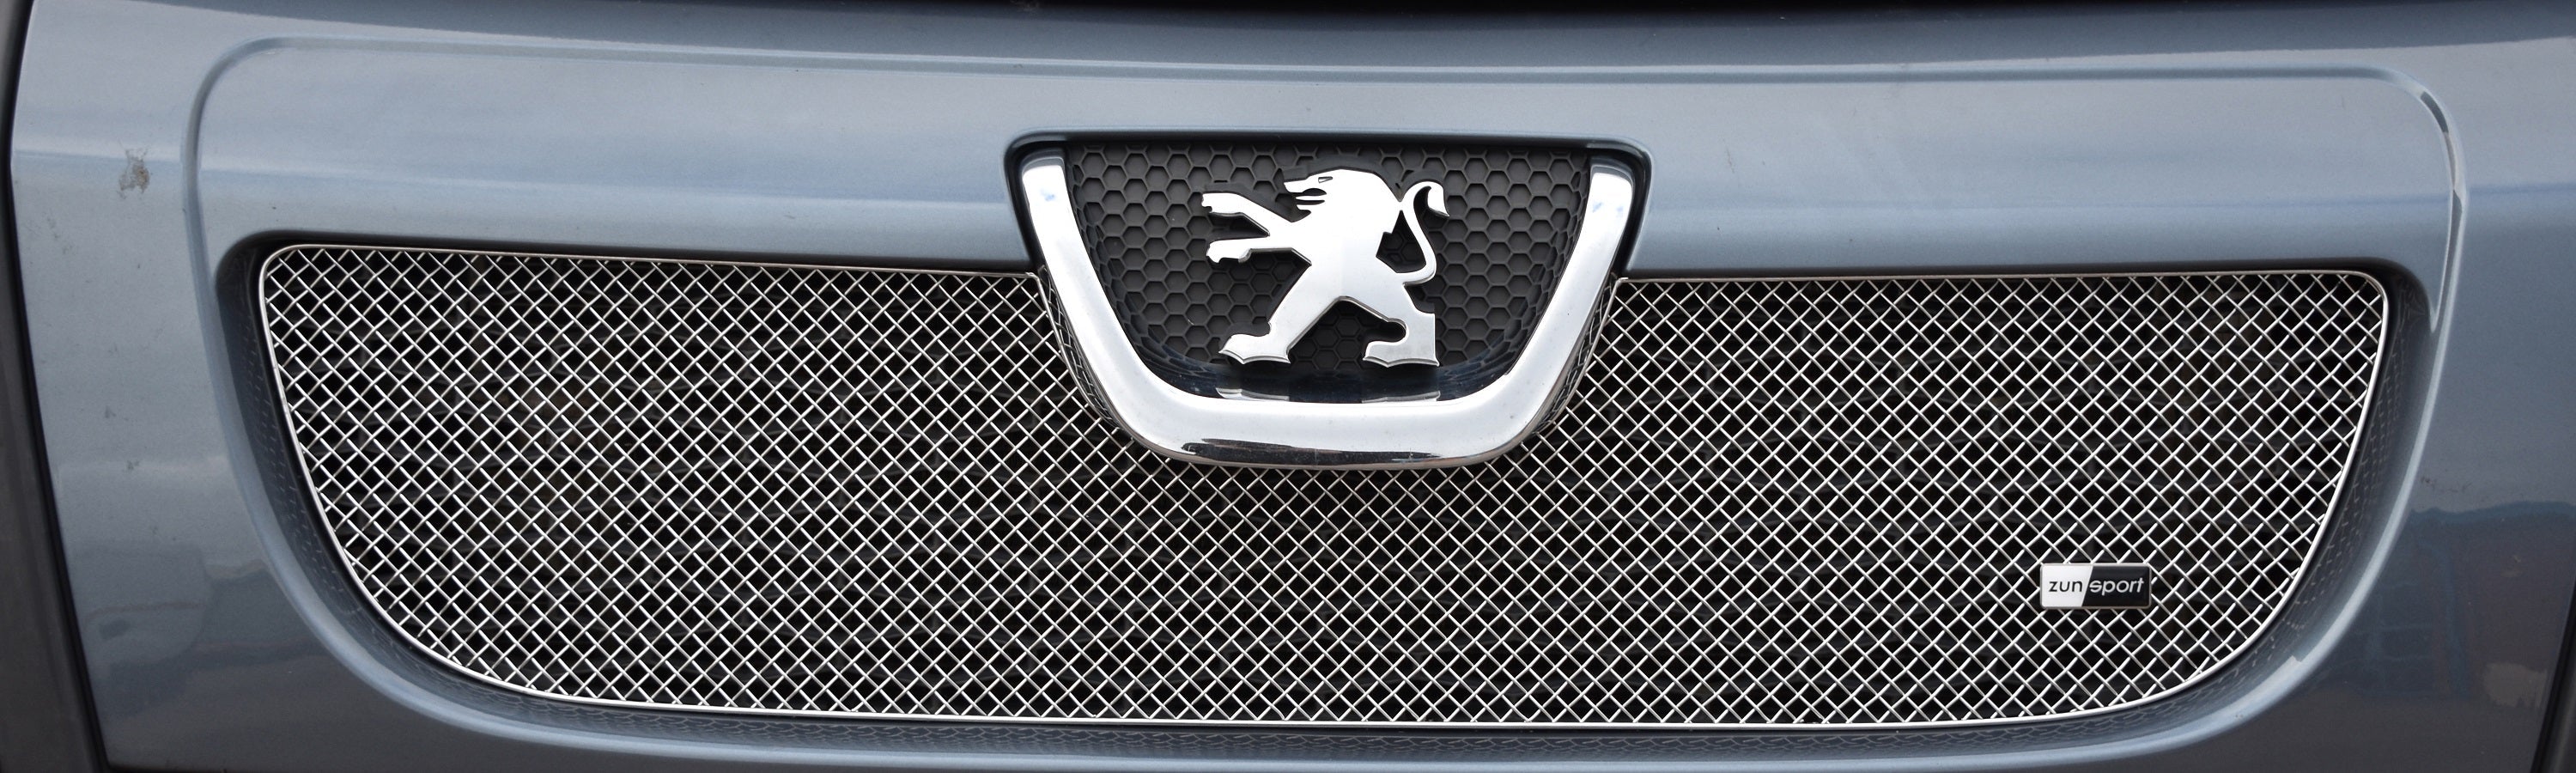 Zunsport Peugeot Boxer Pre-Facelift 2006 - 2013 Upper Grille